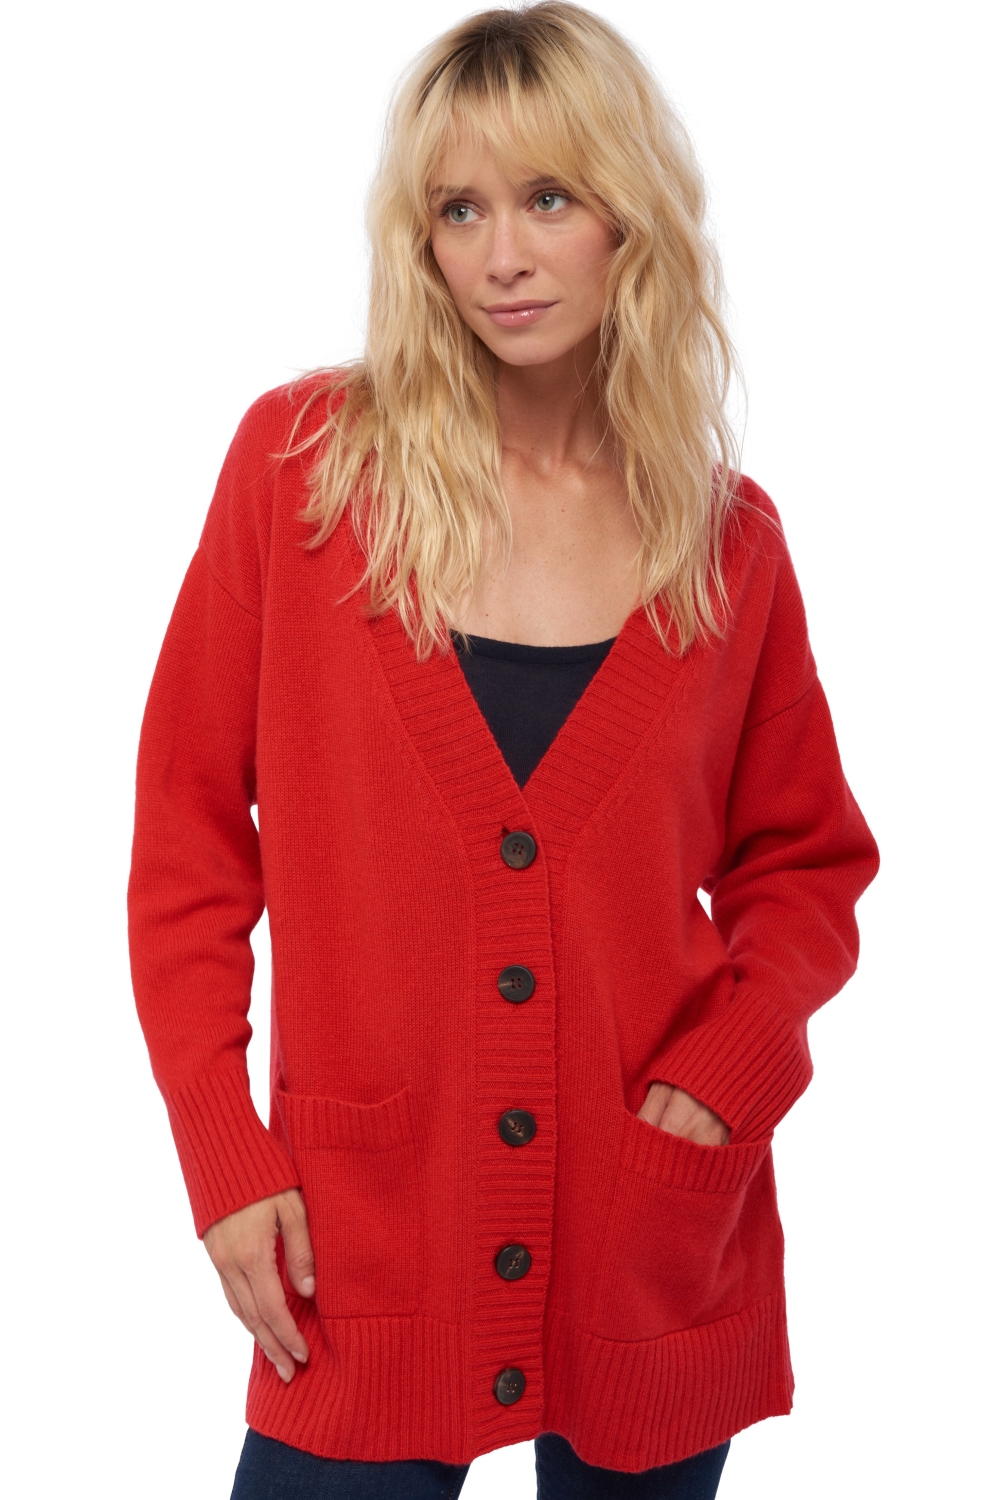 Cachemire robe manteau femme vadena rouge 2xl